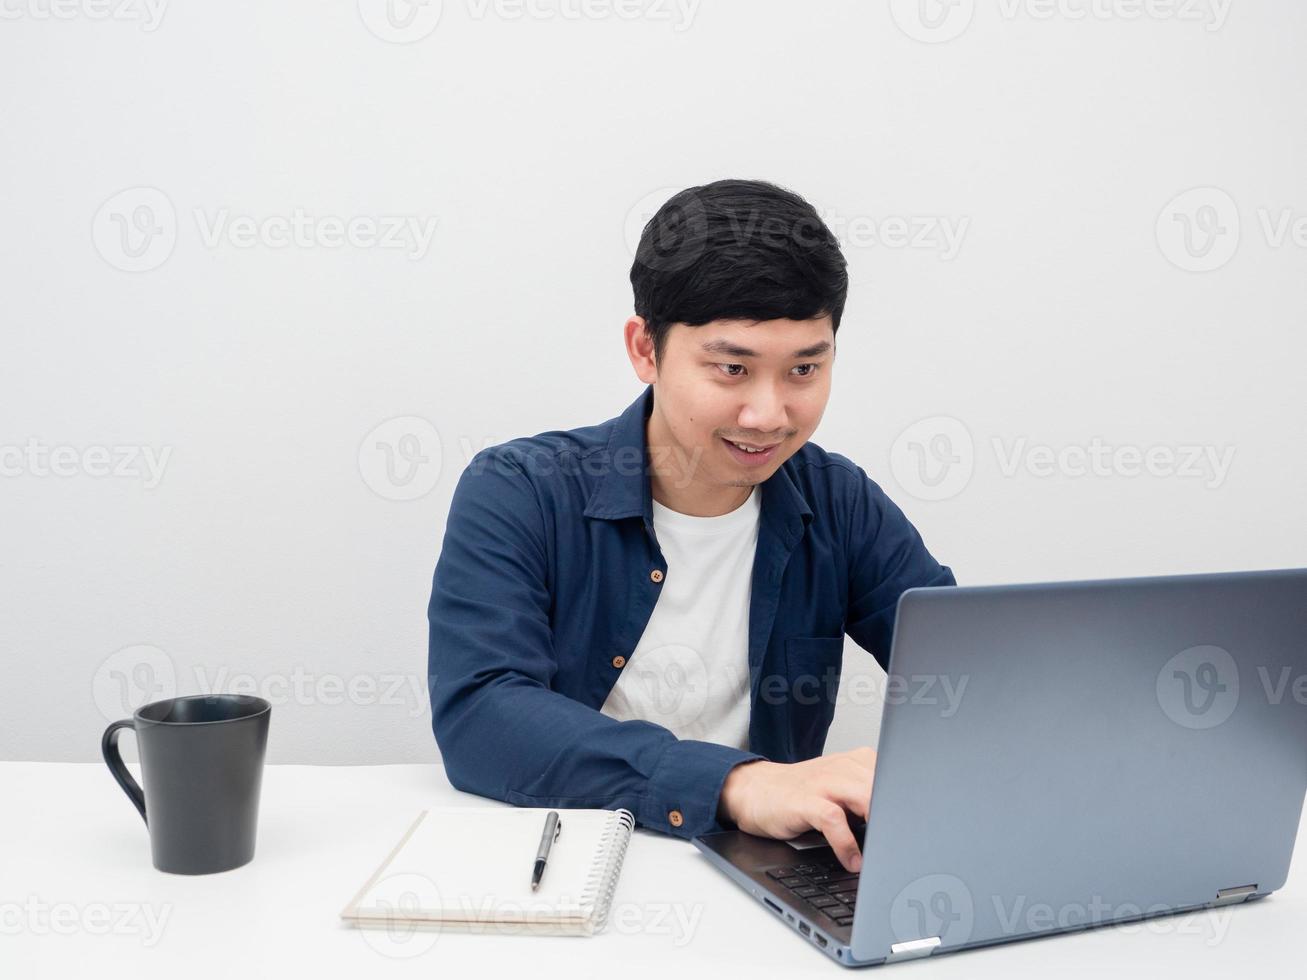 homme asiatique utilisant un ordinateur portable pour travailler sur la table photo